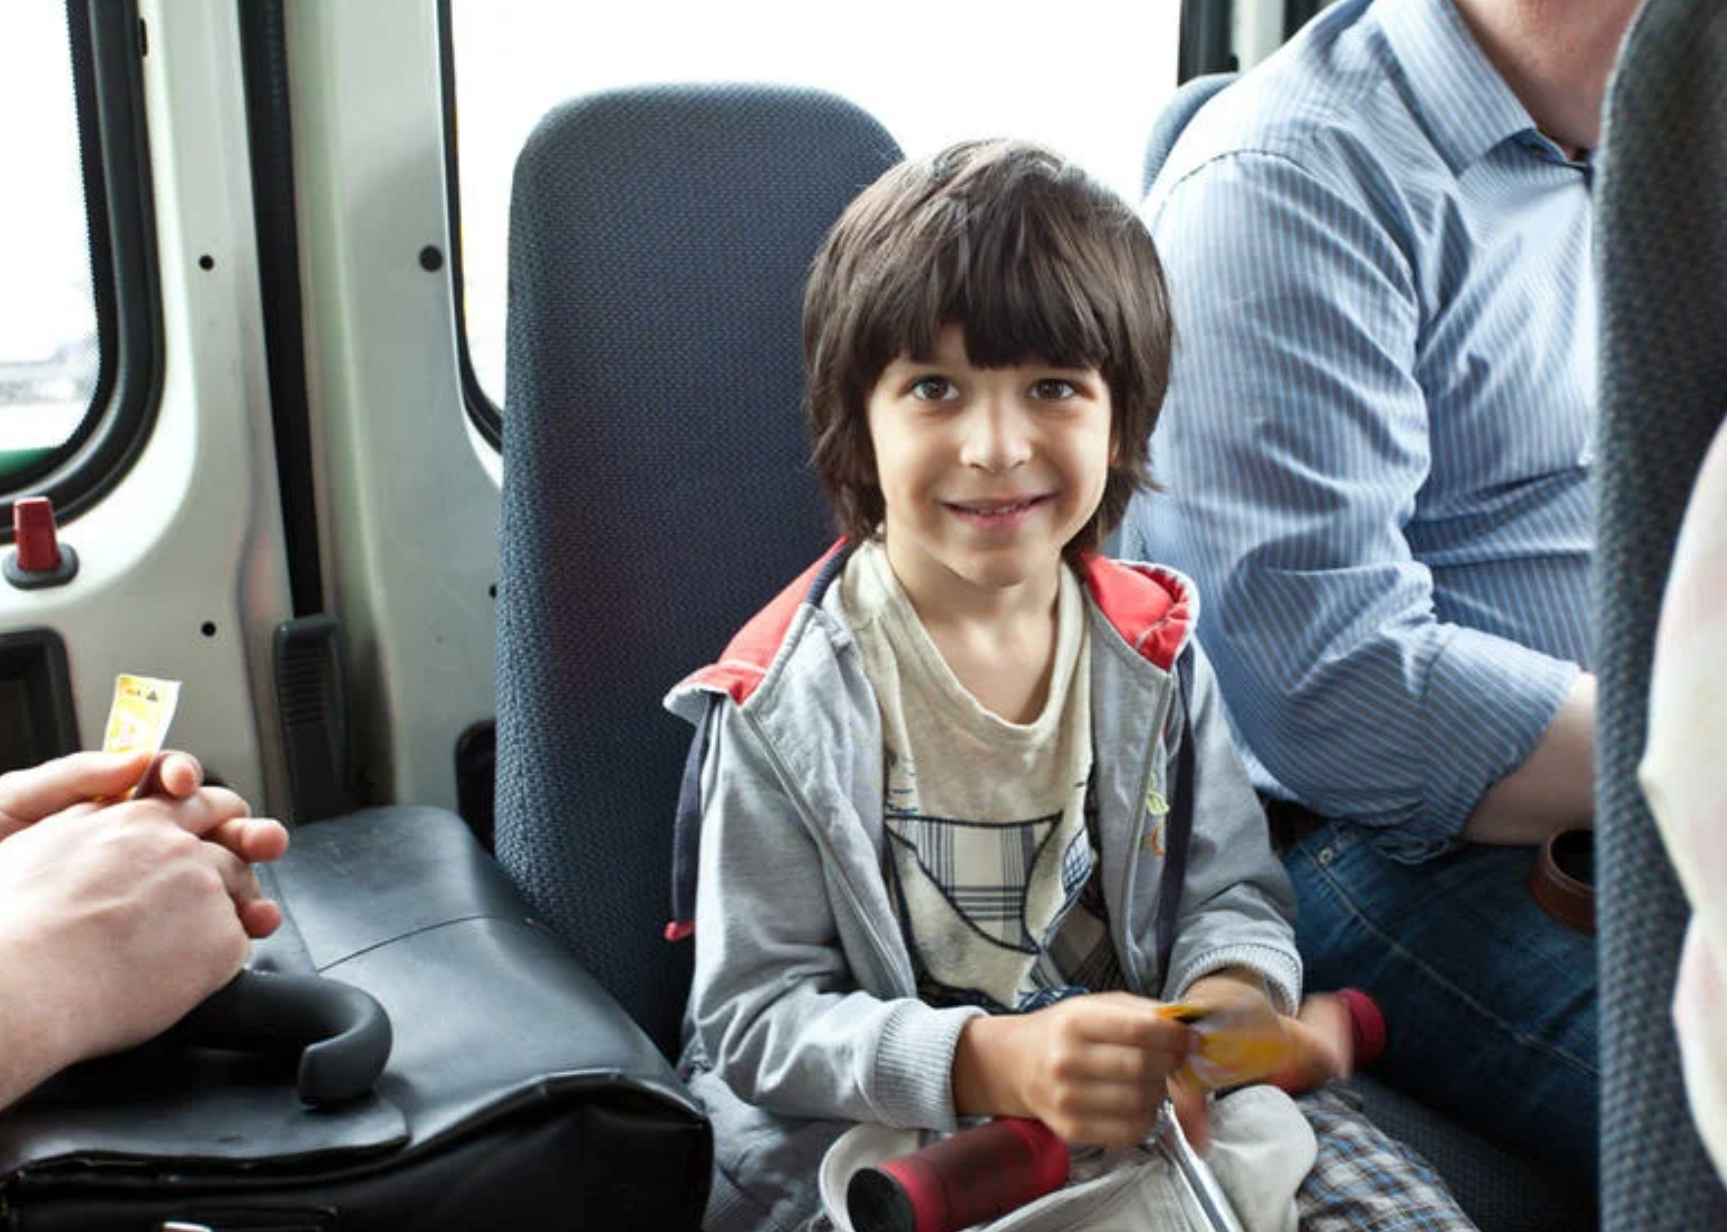 деца у јавном превозу треба да седе